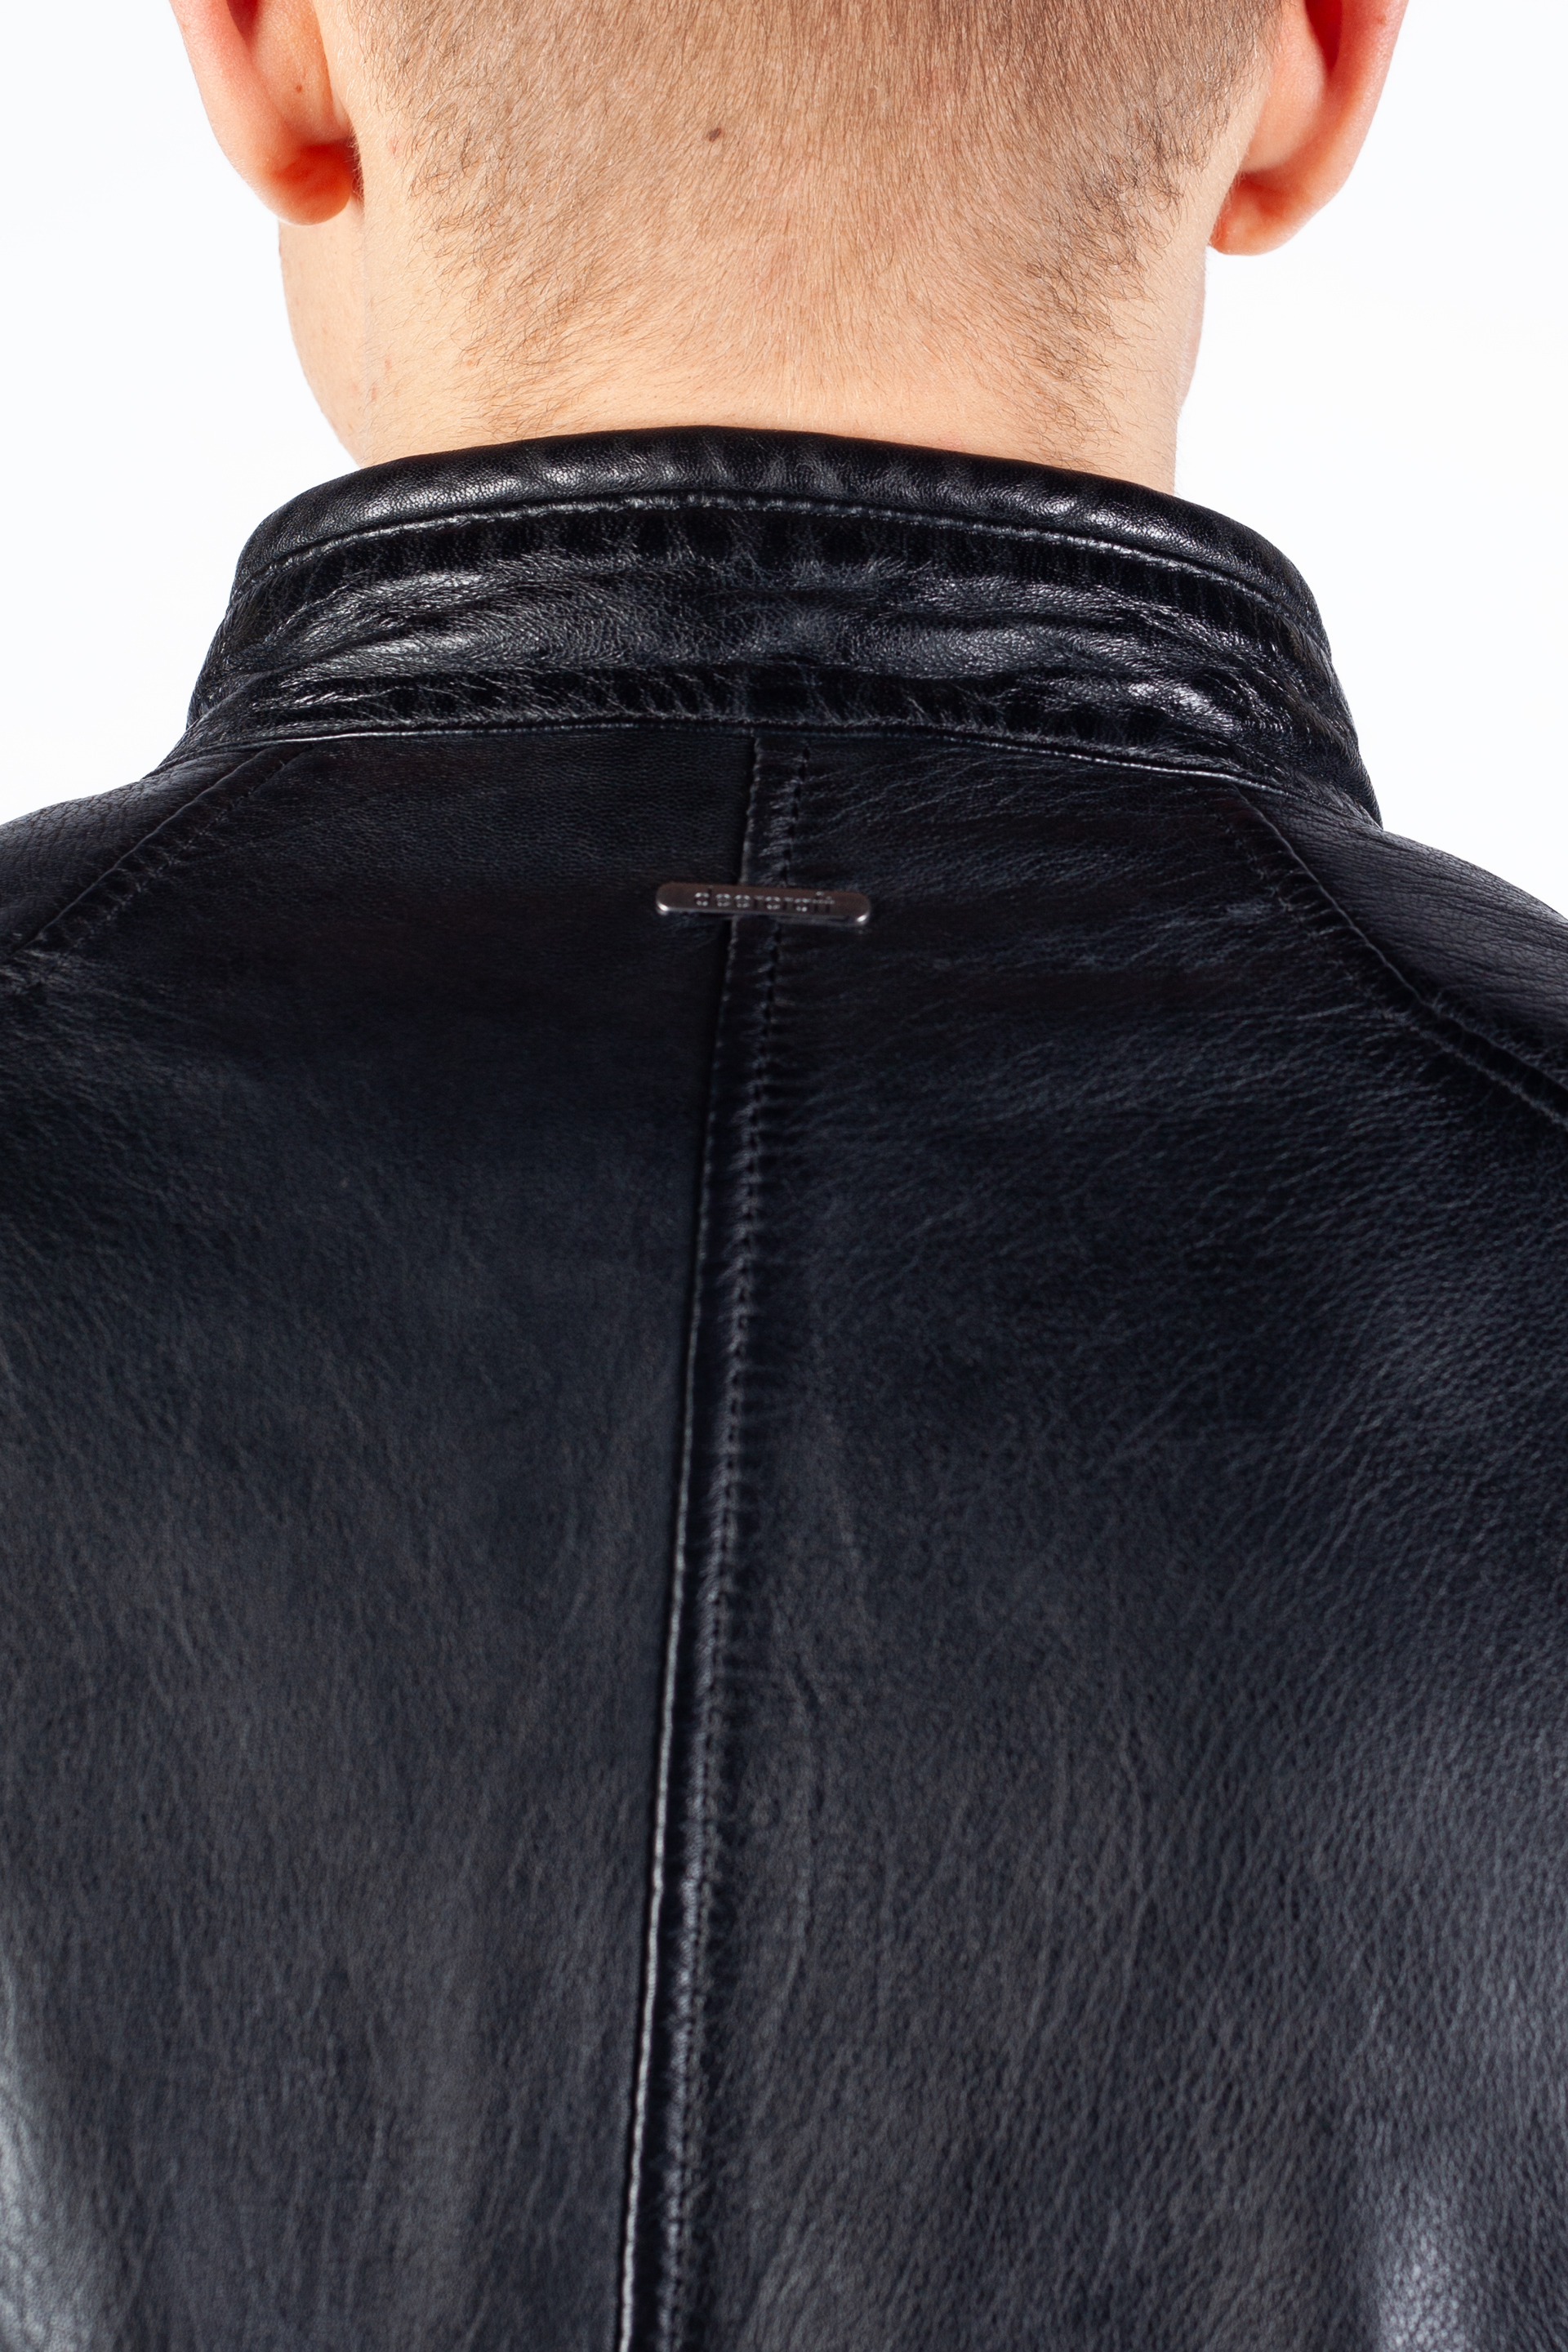 Leather jacket DEERCRAFT 3701-0126-black